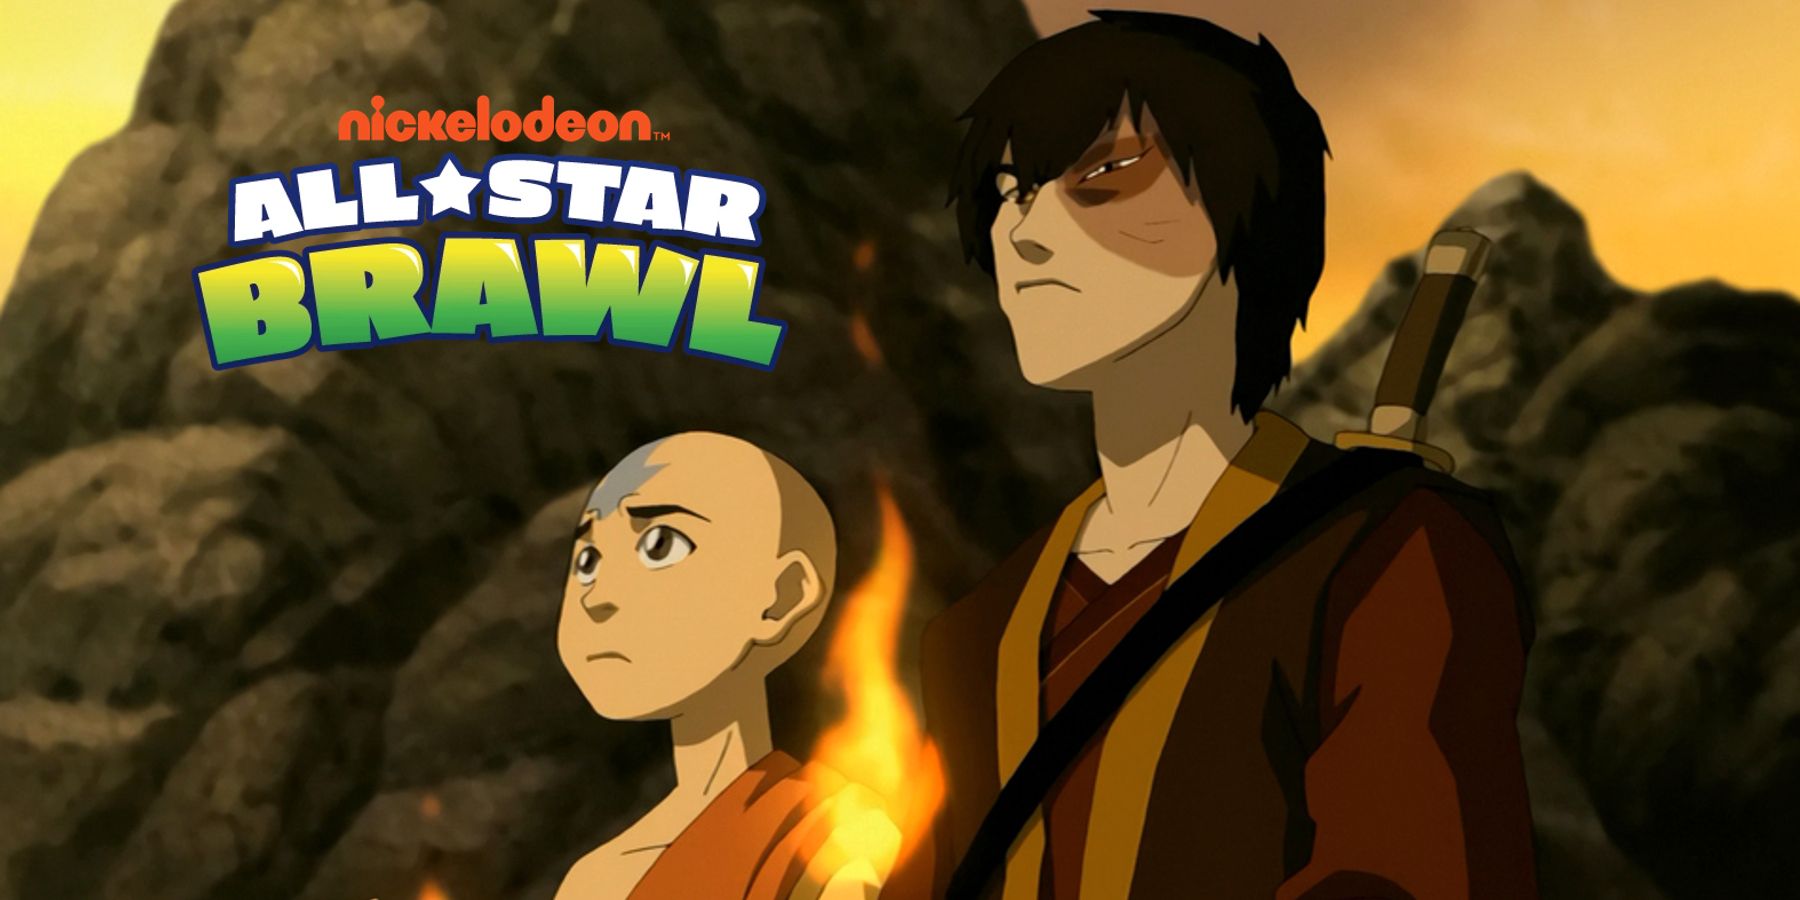 Nickelodeon All-Star Brawl: Prinssi Zuko täydentäisi Avatar-näyttelijät täydellisesti